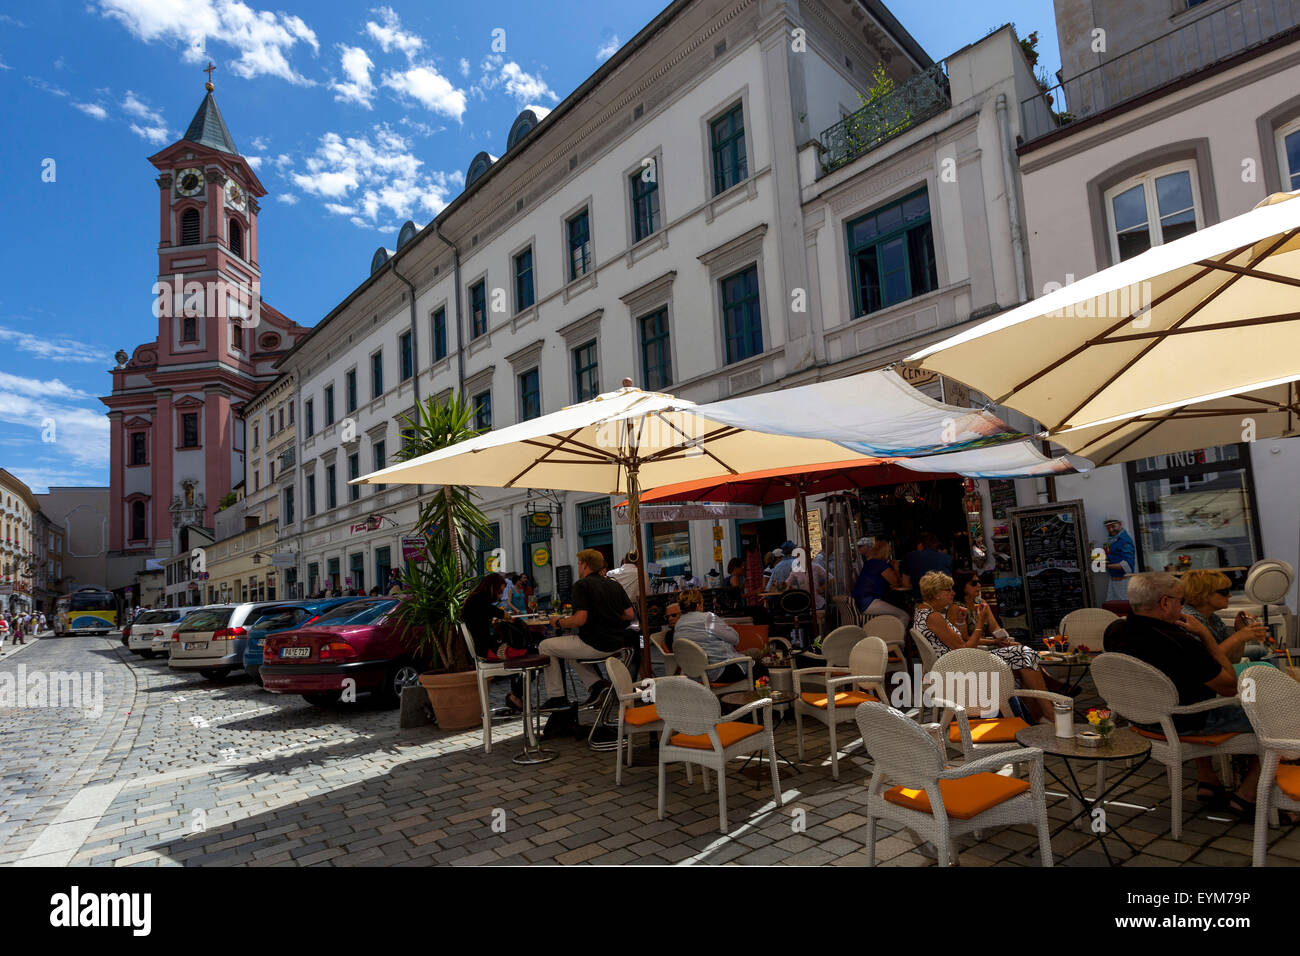 San Paolo Chiesa Passau Altstadt persone nel ristorante sulla piazza Rindermarkt centro storico di Passau Germania Foto Stock